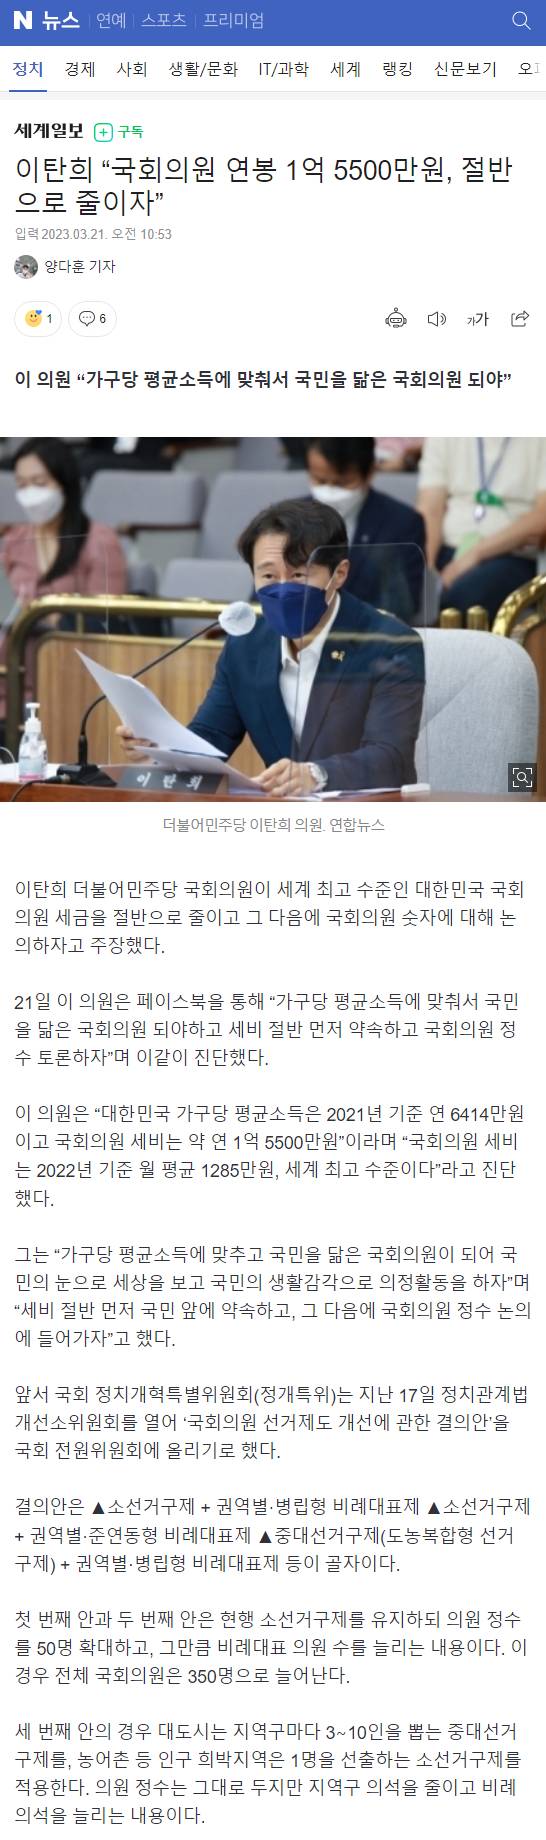 이탄희 "국회의원 연봉 1억 5500만원, 절반으로 줄이자” | 인스티즈